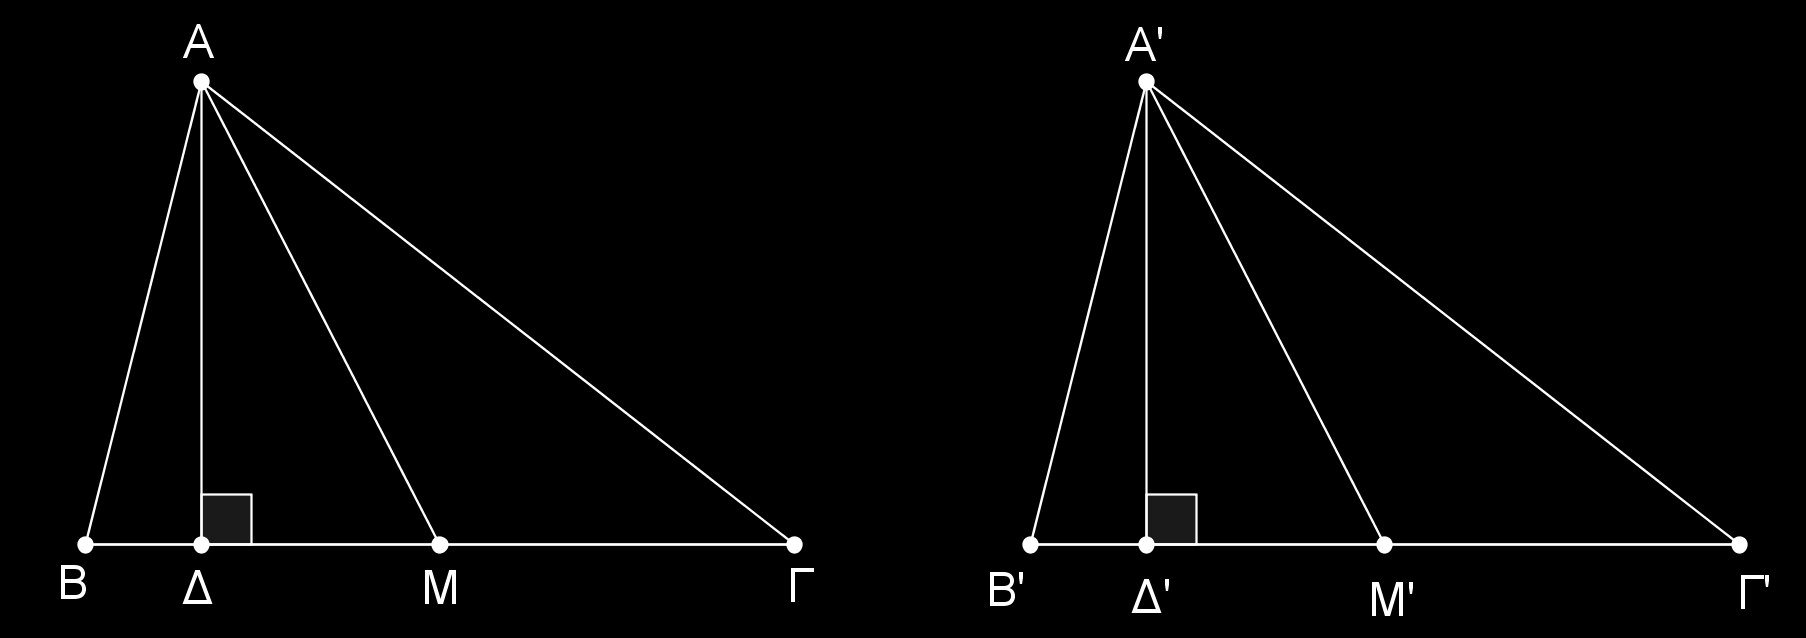 Α. Να αποδείξετε ότι αν σε δύο τρίγωνα ΑΒΓ και ΑΒΓ είναι α = α, υα = υ α, και µ α = µ α, τότε τα τρίγωνα είναι ίσα.